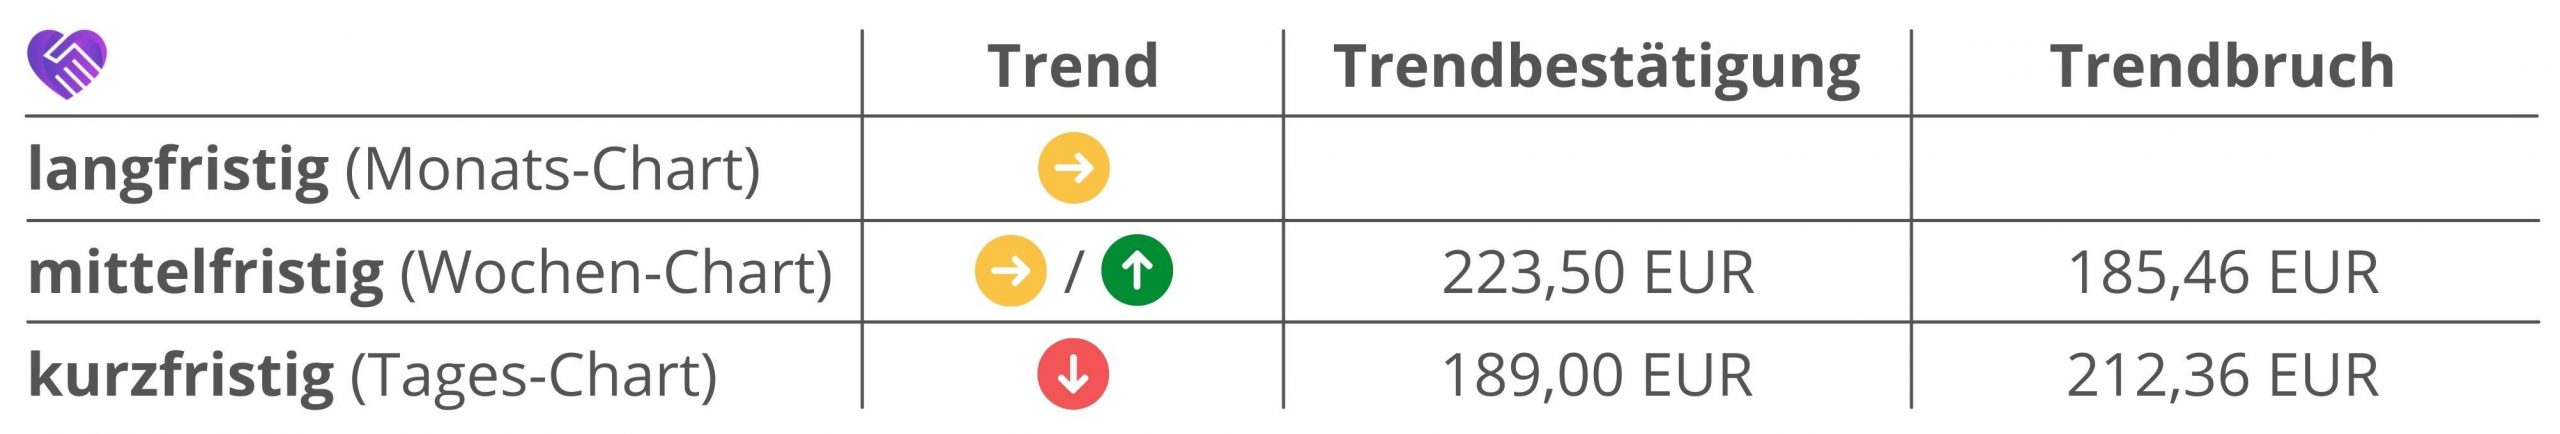 Allianz Aktie Analyse Trends